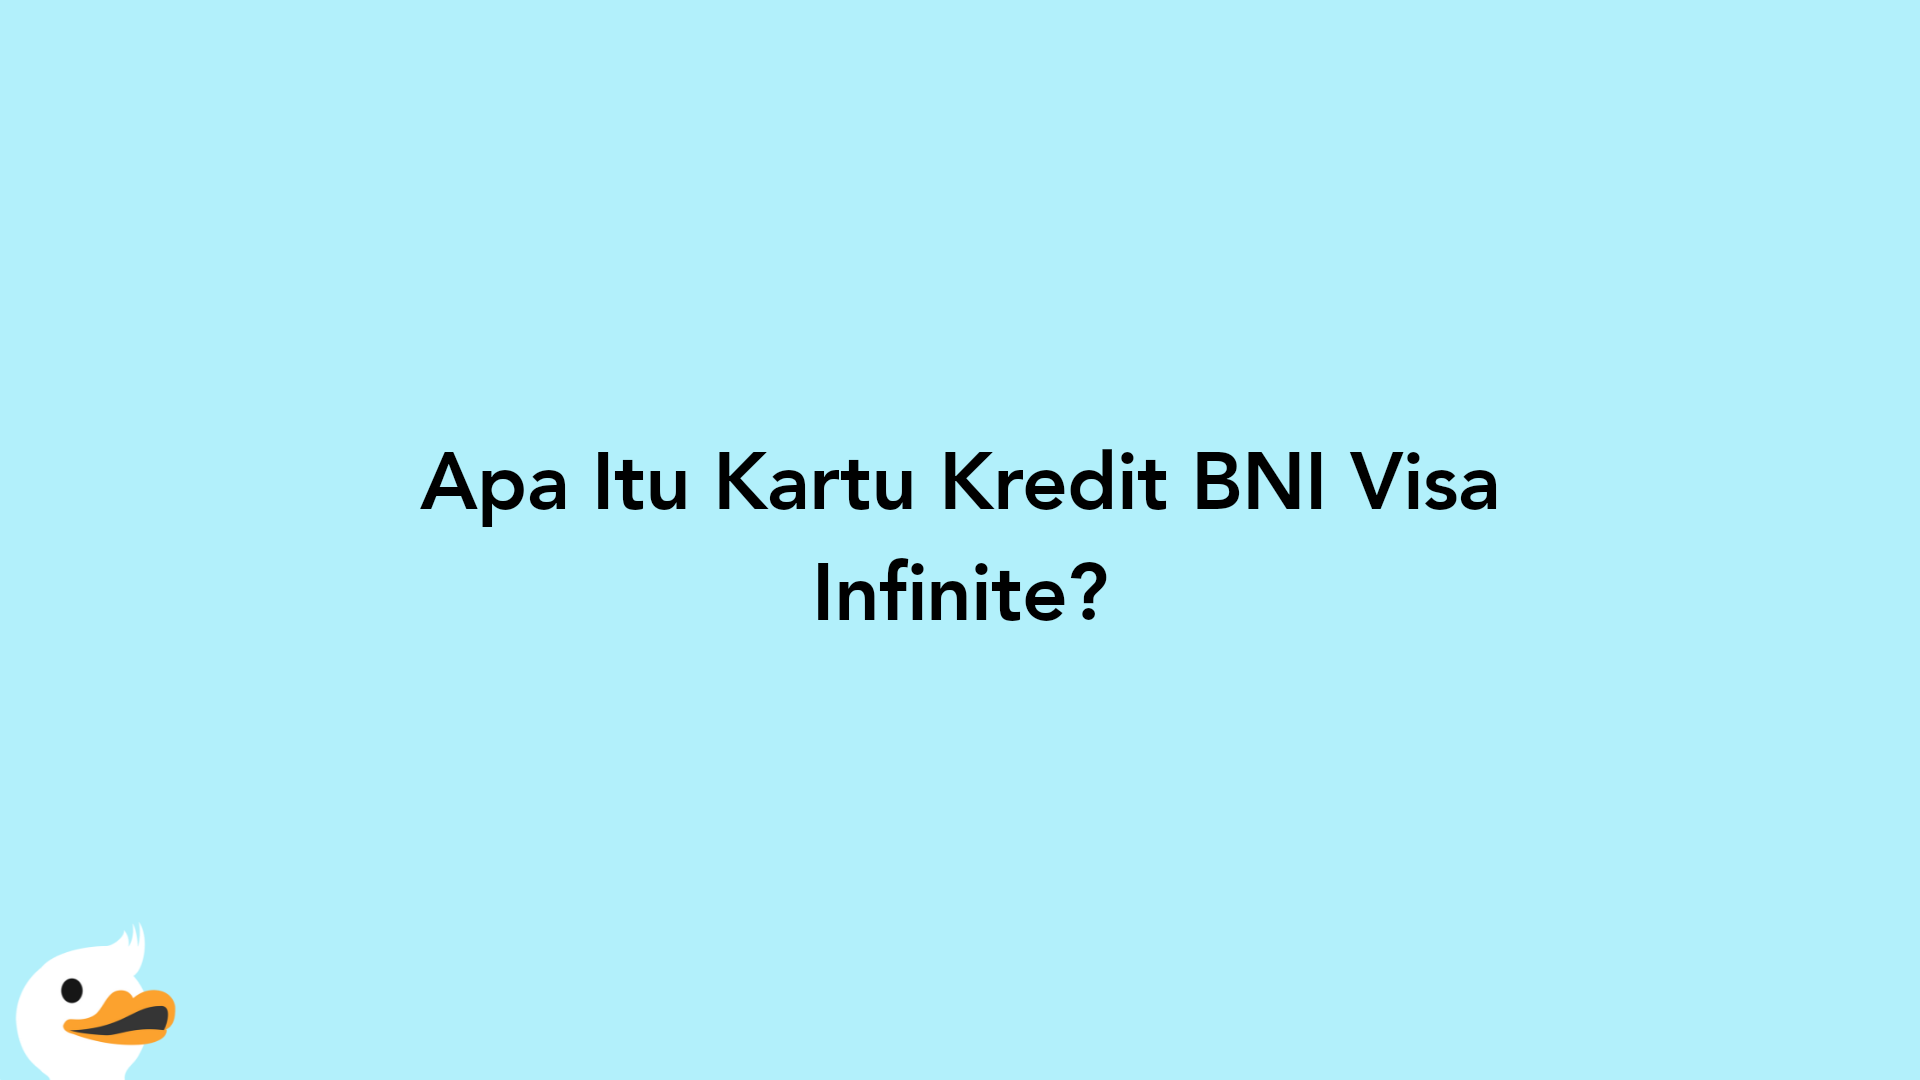 Apa Itu Kartu Kredit BNI Visa Infinite?